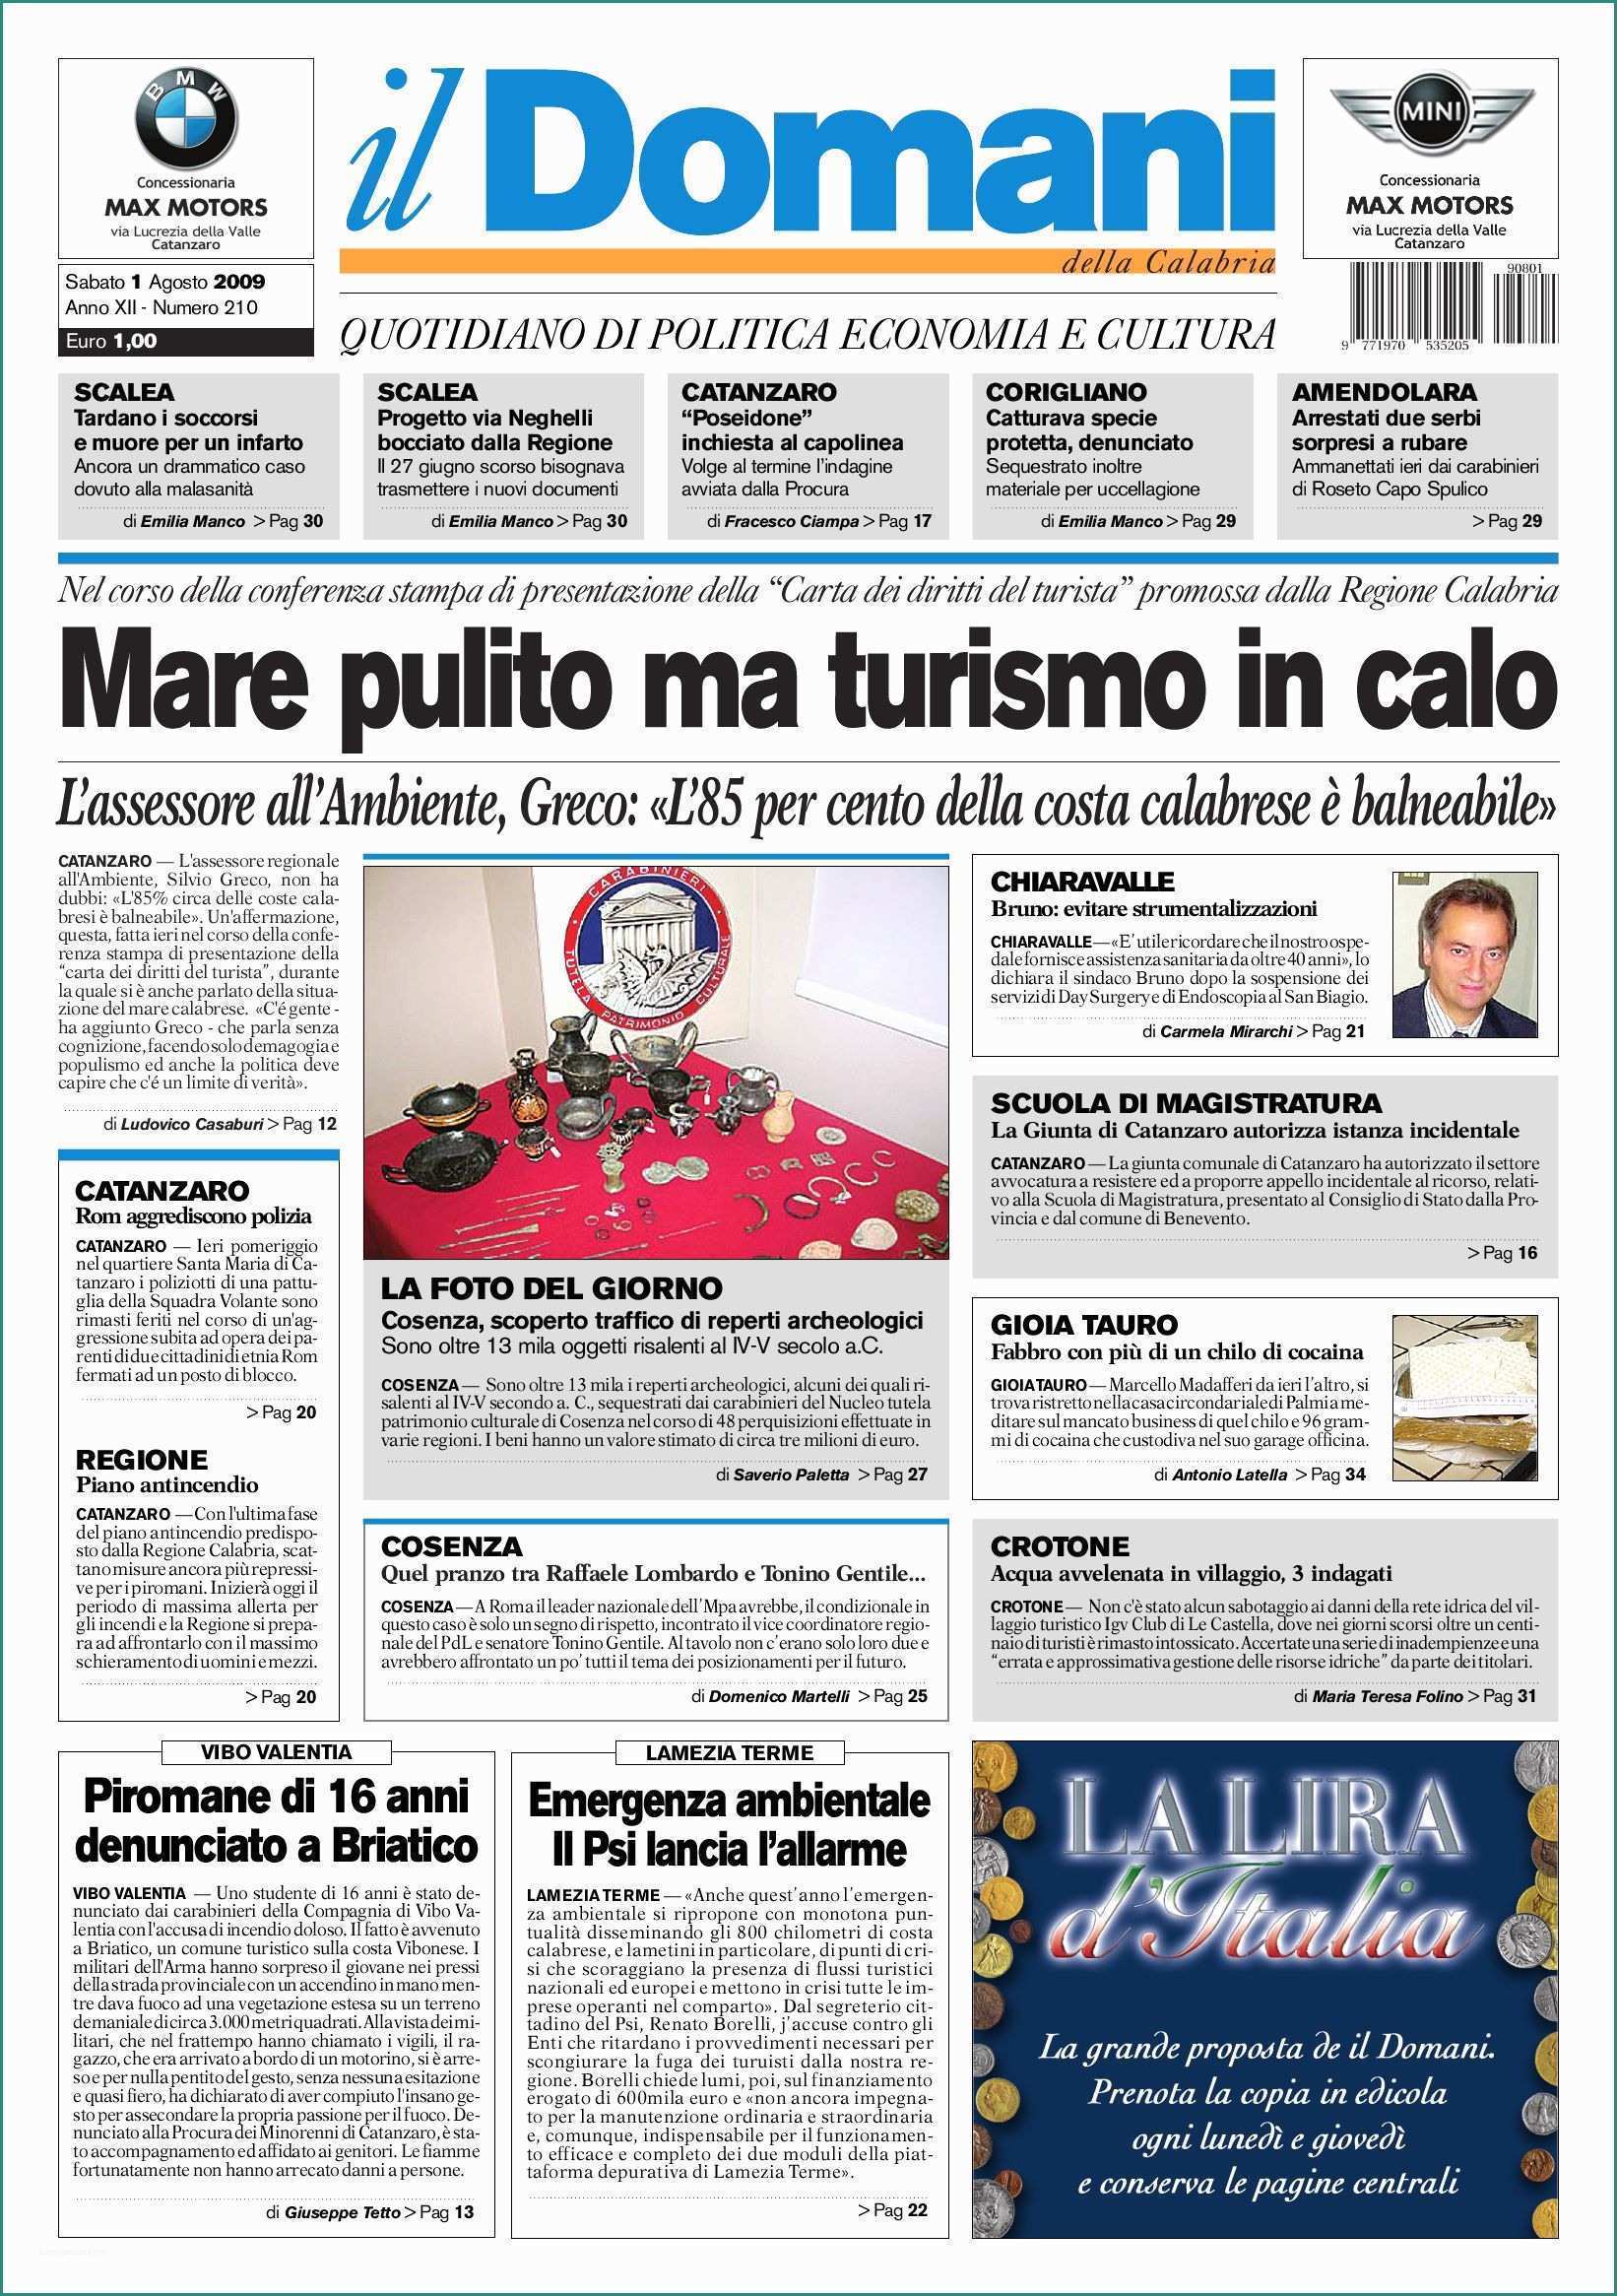 Residuo Fisso Acqua Blues E Ildomani by T&p Editori Il Domani issuu